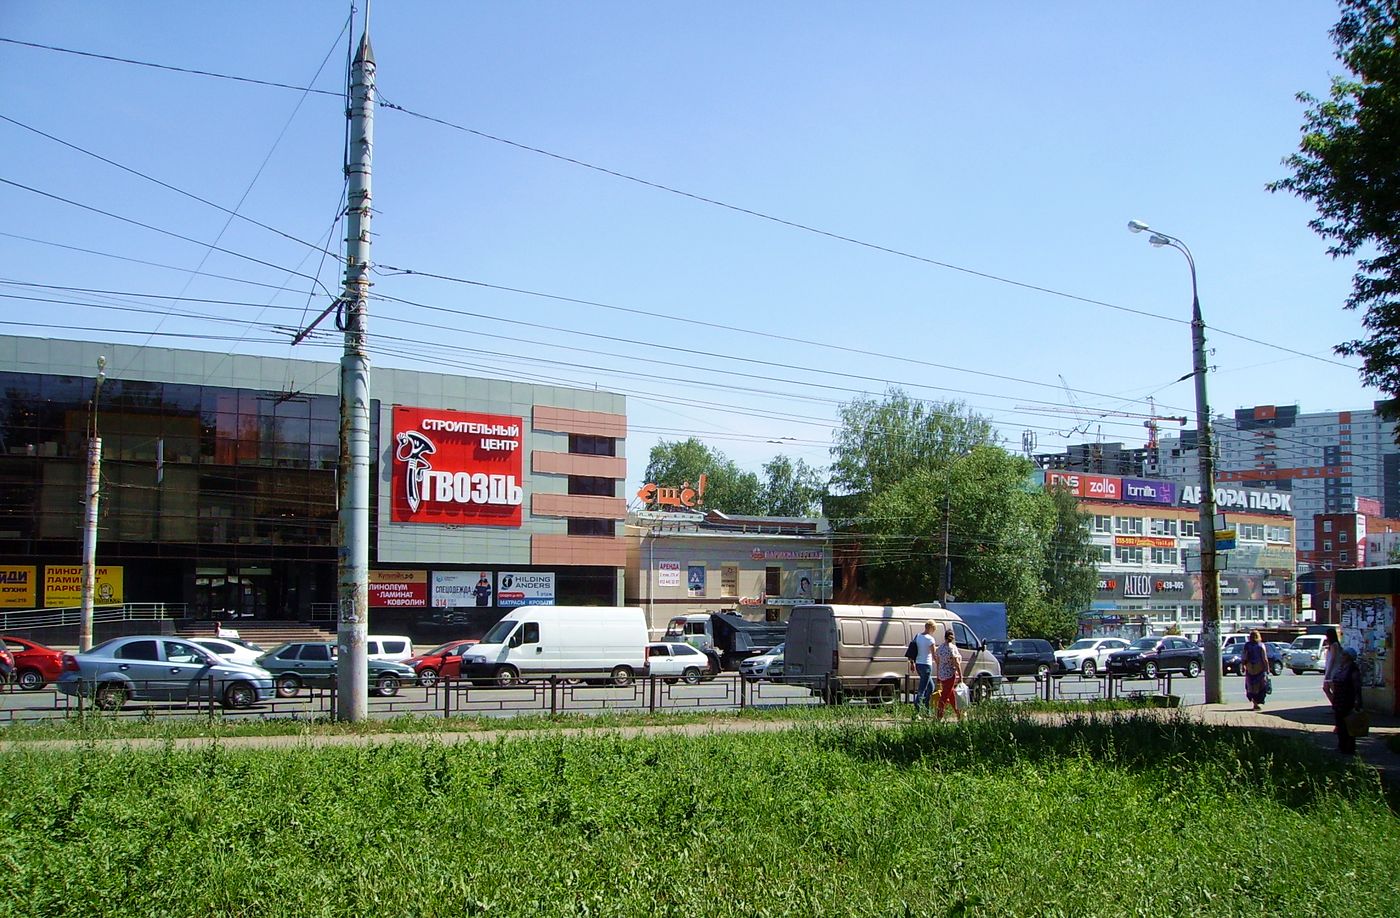 Торговый центр «Аврора-Парк» и строительный центр "Гвоздь", ранее корпуса бывшего Ижевского подшипникового завода, основанного в 1956 году. 2017 год.